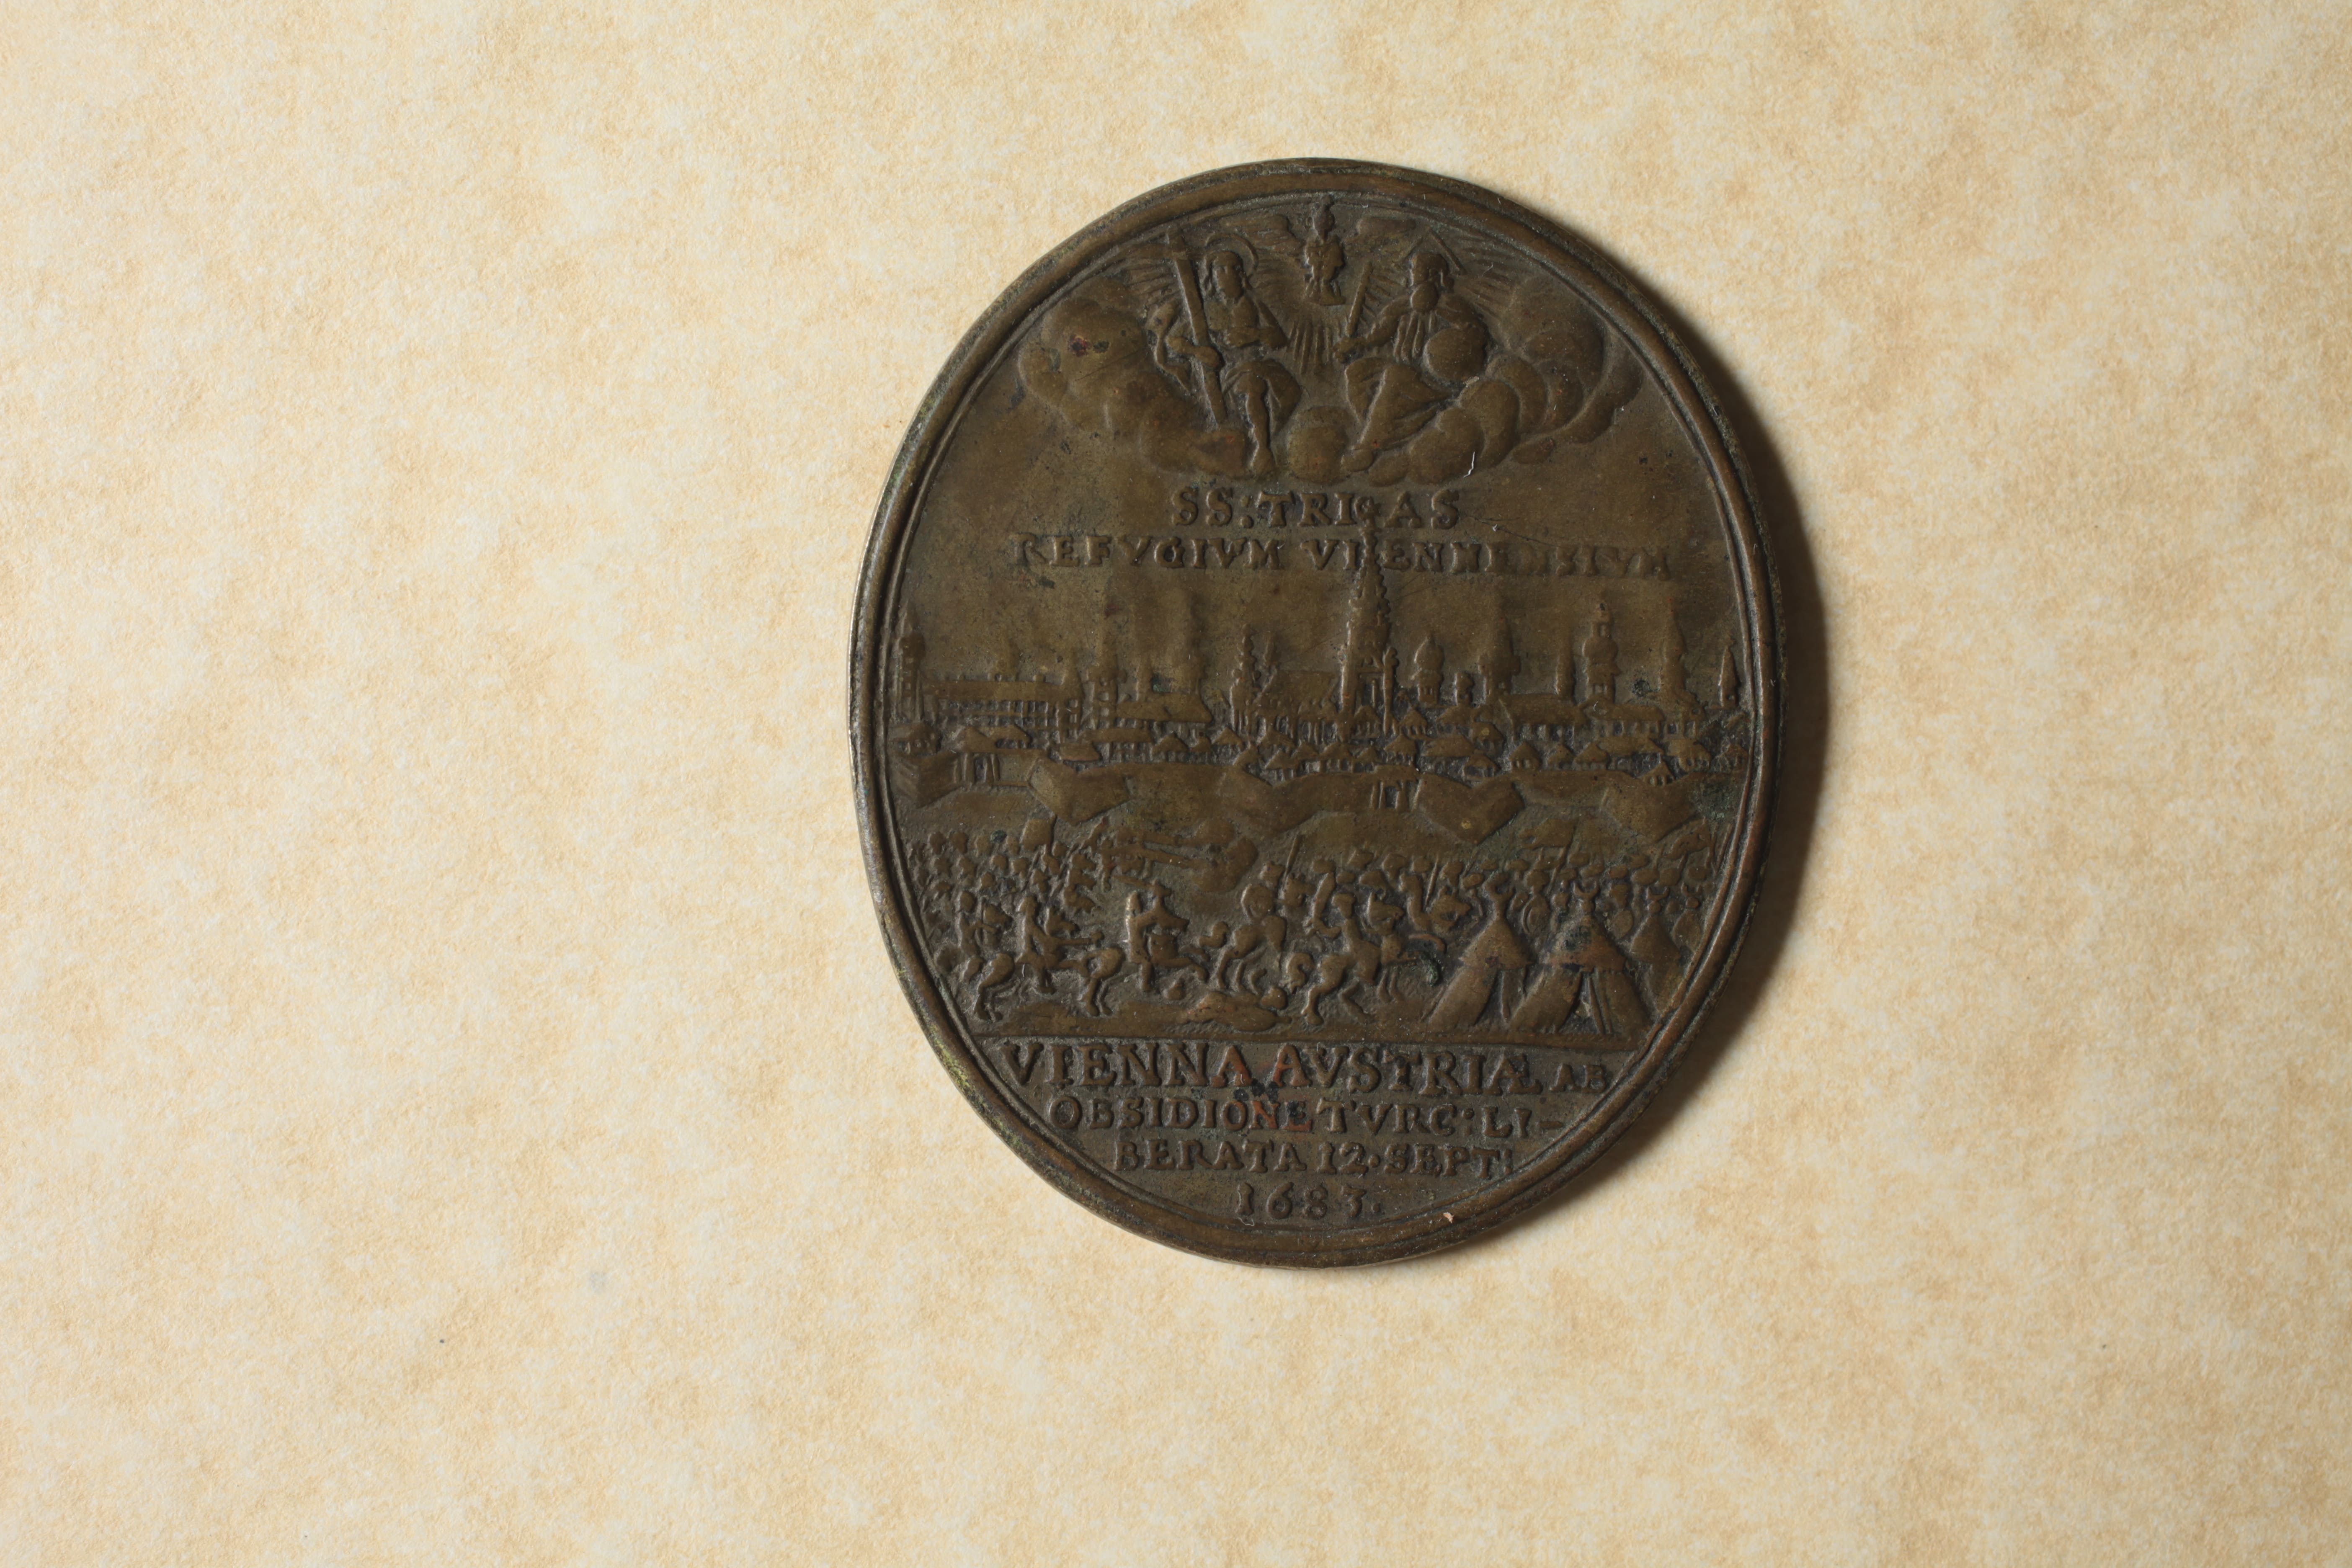 Medaglia per la fine dell'assedio turco, opus Paul Seel, bronzo, mm 44,4 X 37 (Archivio di Stato di Modena, Medagliere, 55), recto.